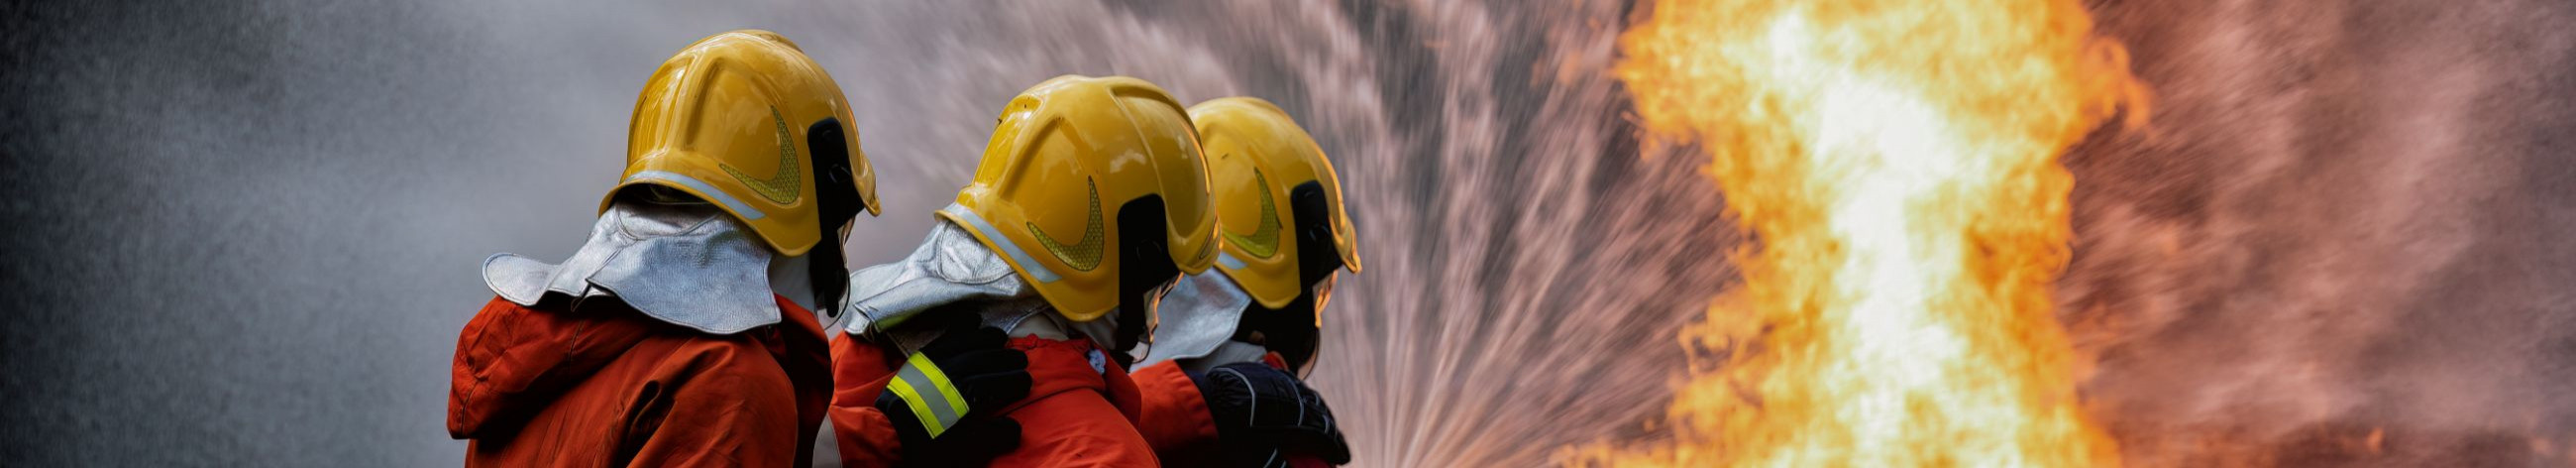 Firepro OÜ pakub välja võimaluse aitamaks lahendada ettevõtetes tuleohutusalaselt üles kerkinud probleeme ja küsimusi. Meie kollektiiv koosneb päästealase hariduse ja töökogemustega inimestest.